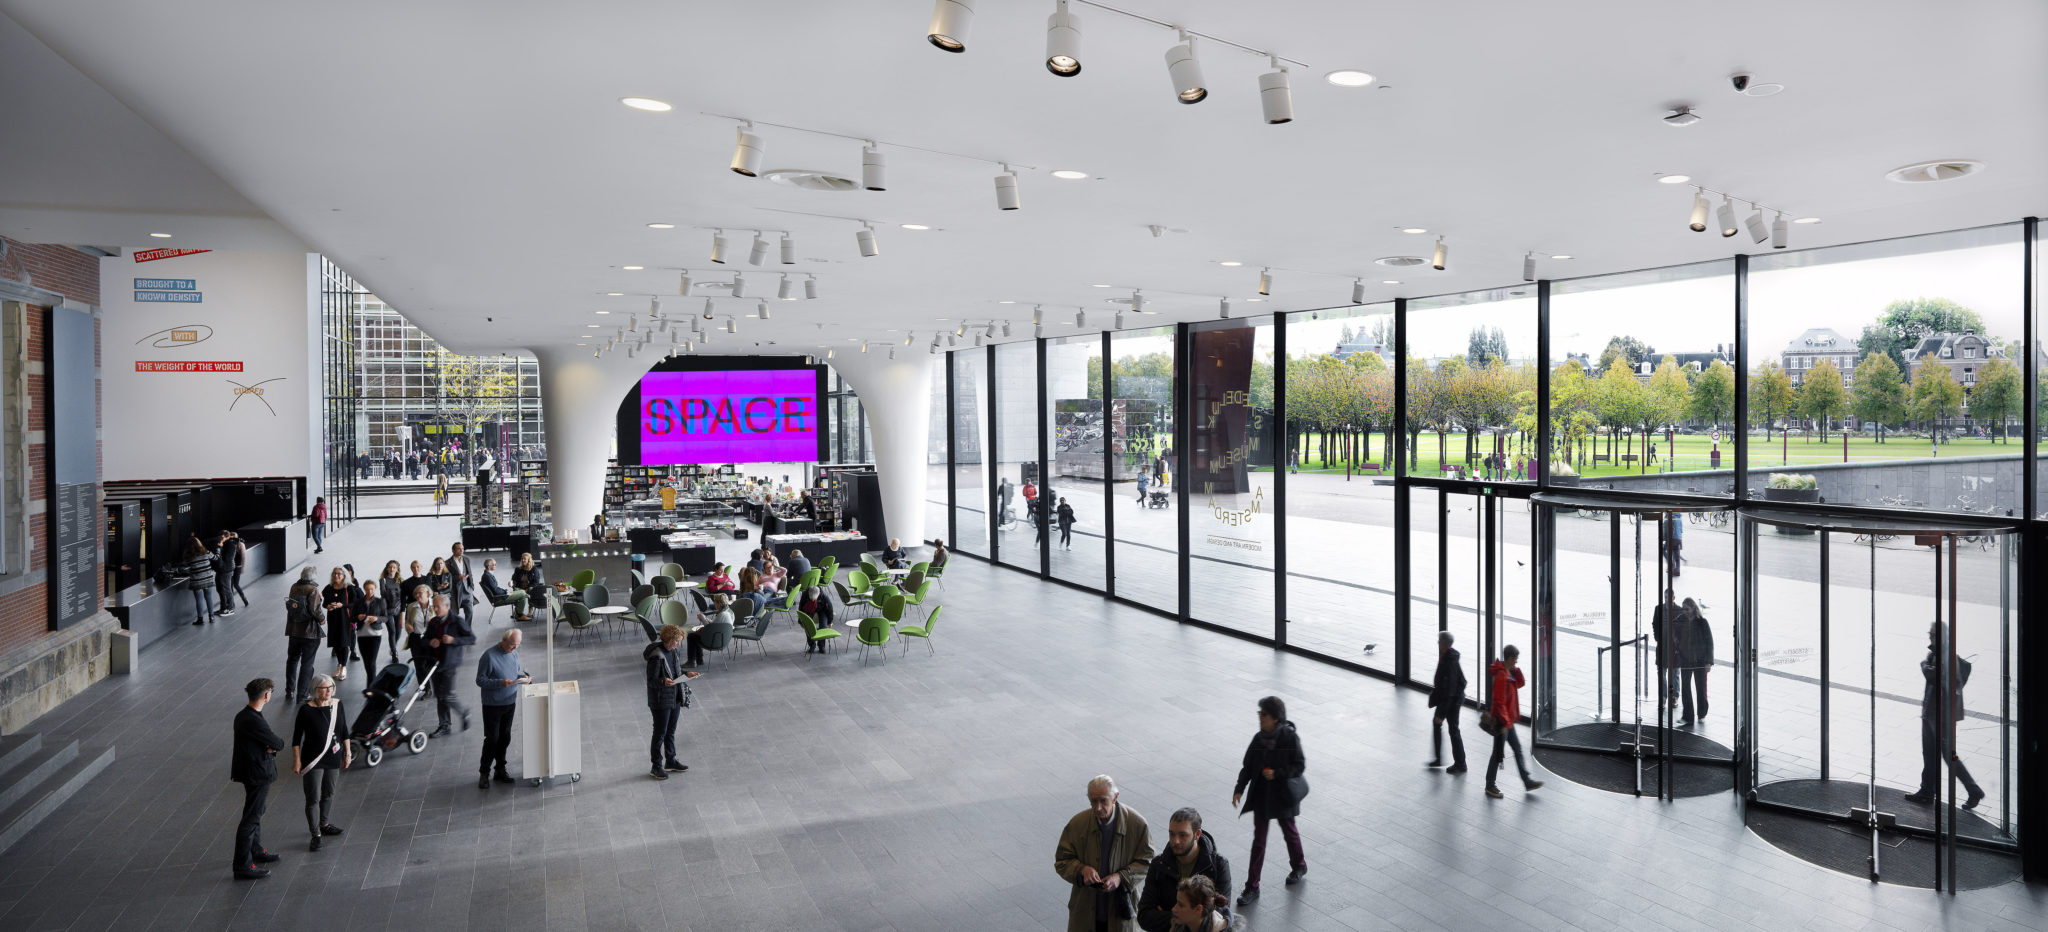 Nieuwe entree voor Stedelijk Museum